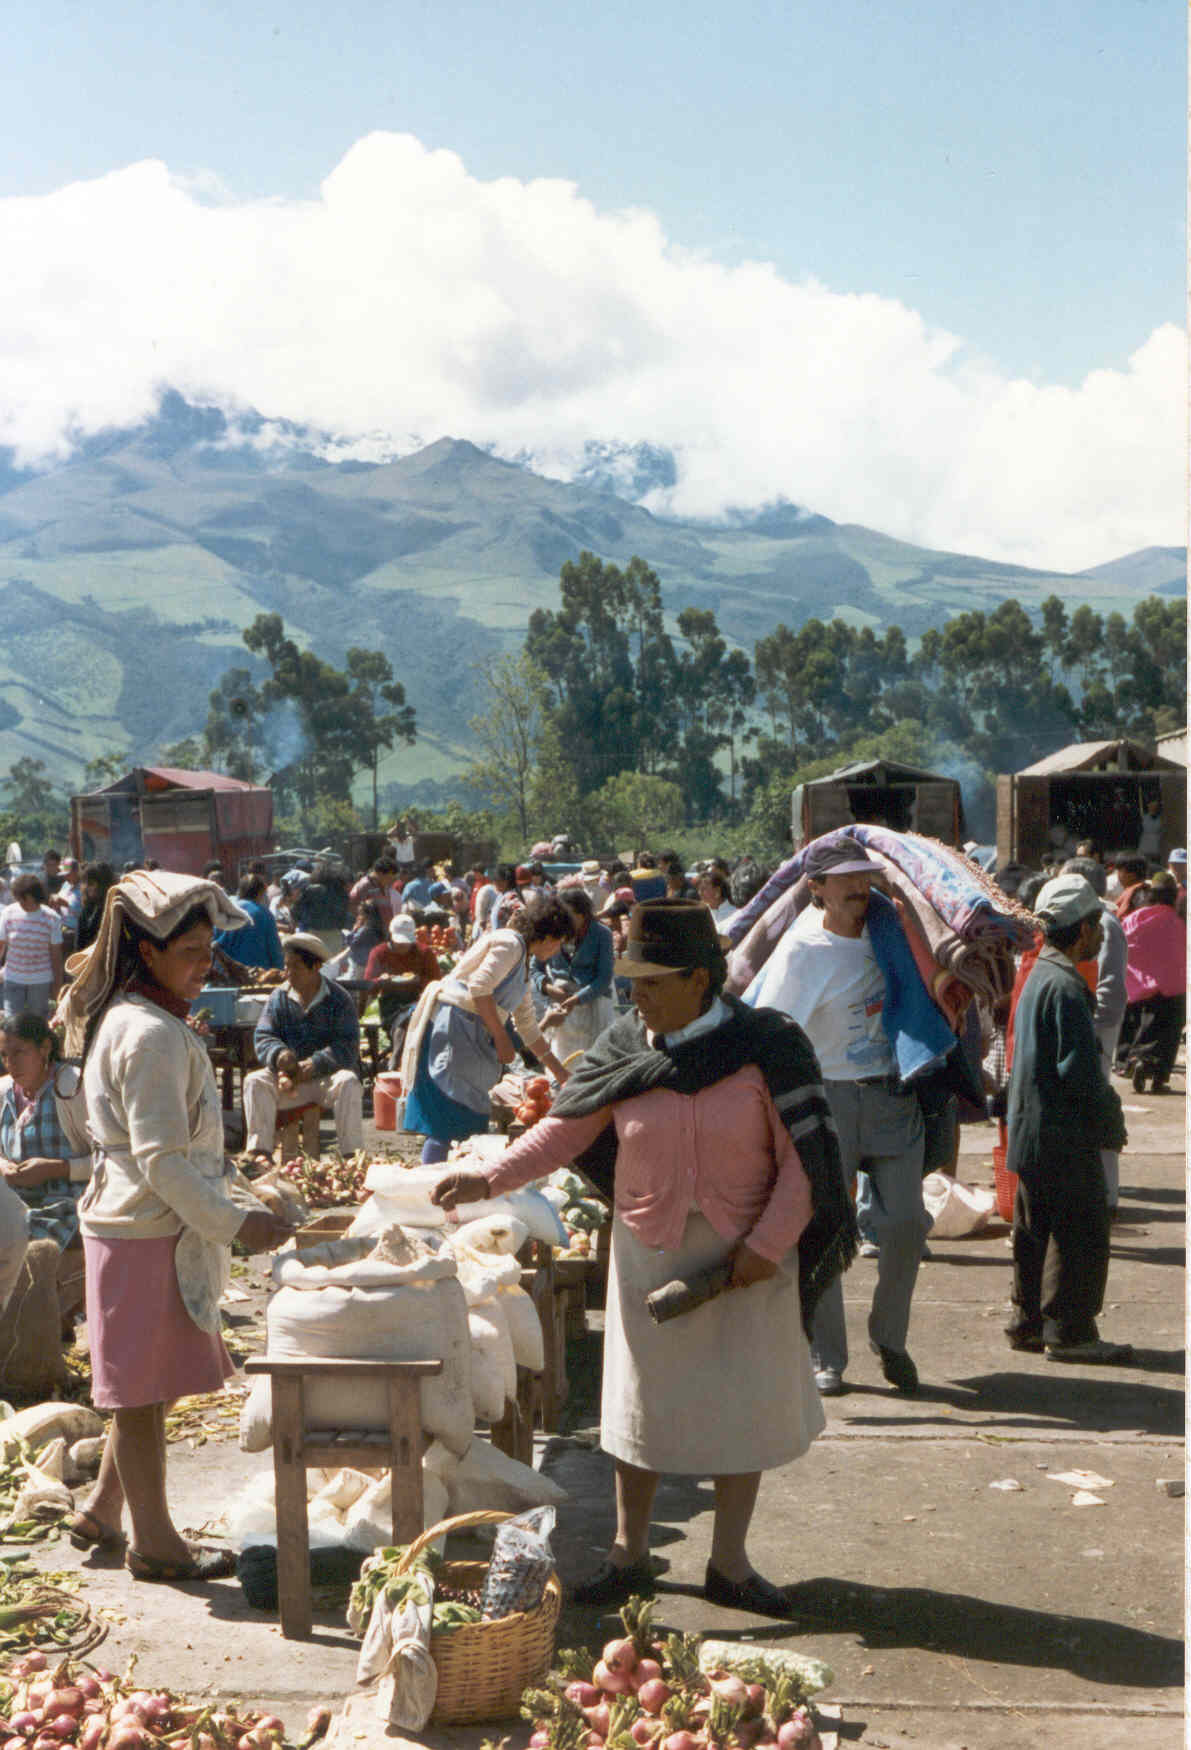 Food Market in Machachi, Ecuador (Photo by IUFRO)